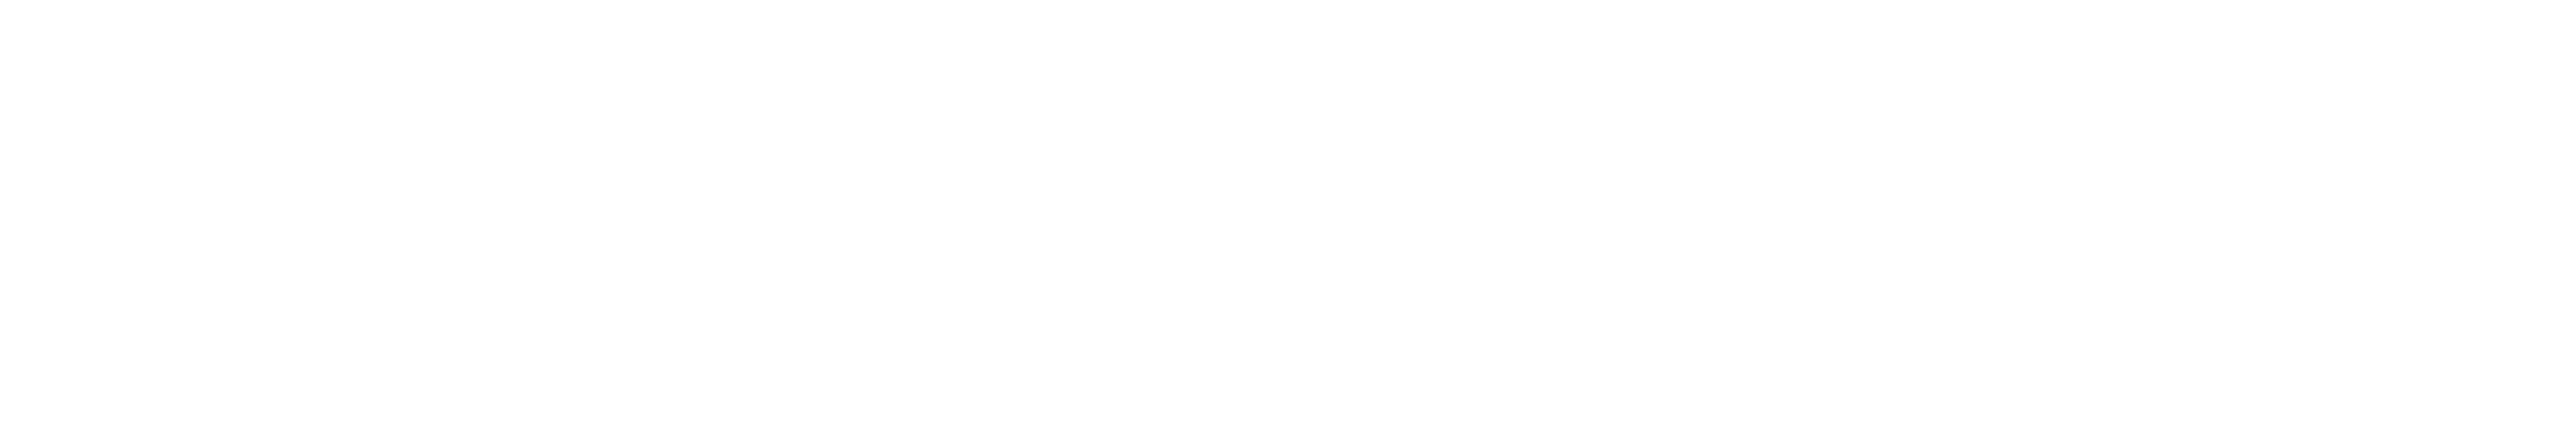 Maler Steinhagen: Logo Malerbetrieb Nierhoff, weiß